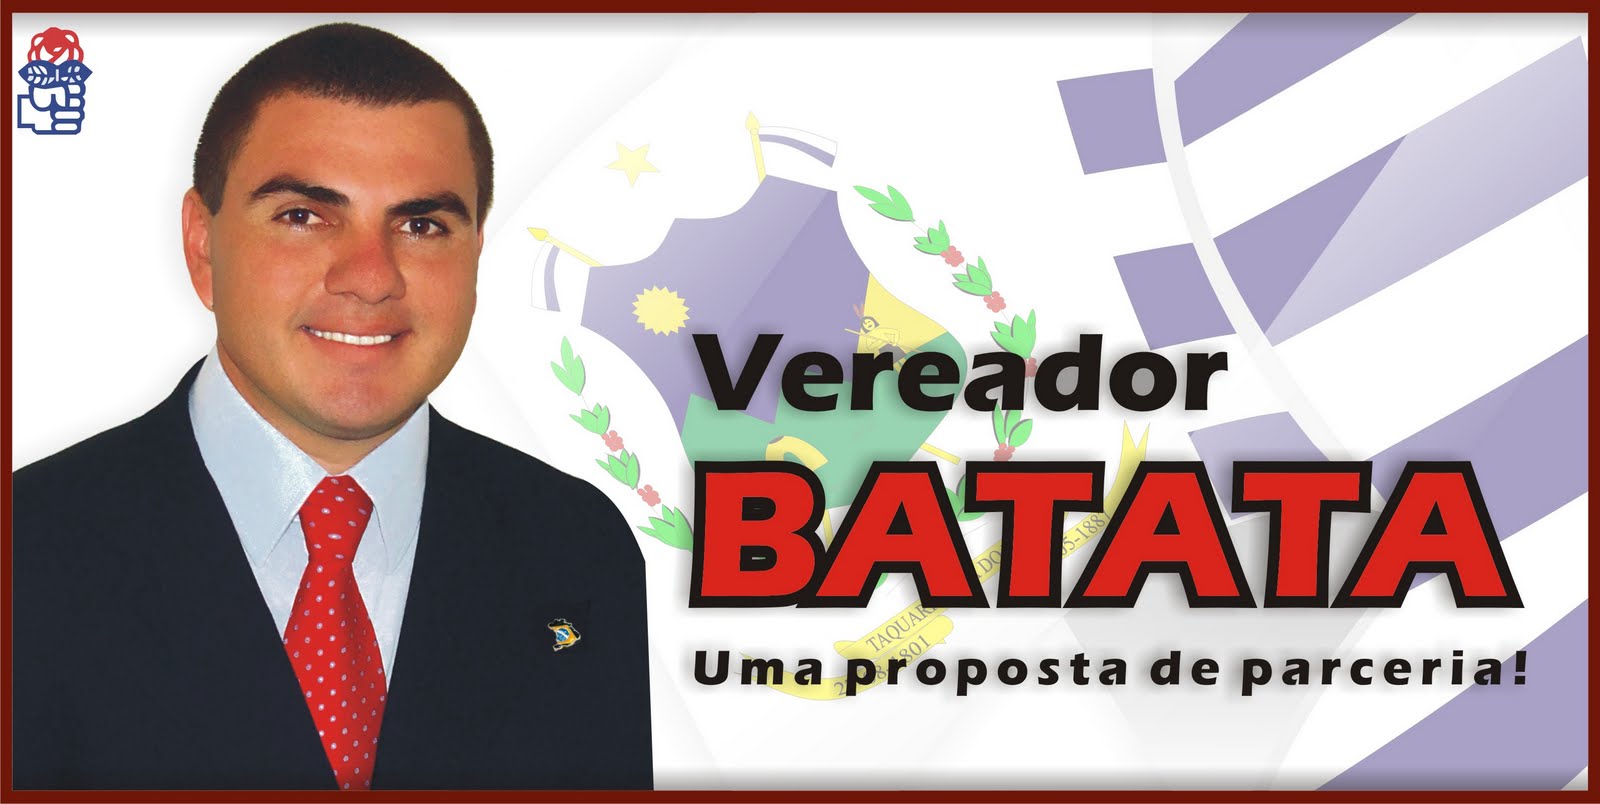 Vereador Irmão Batata - uma proposta de parceria!